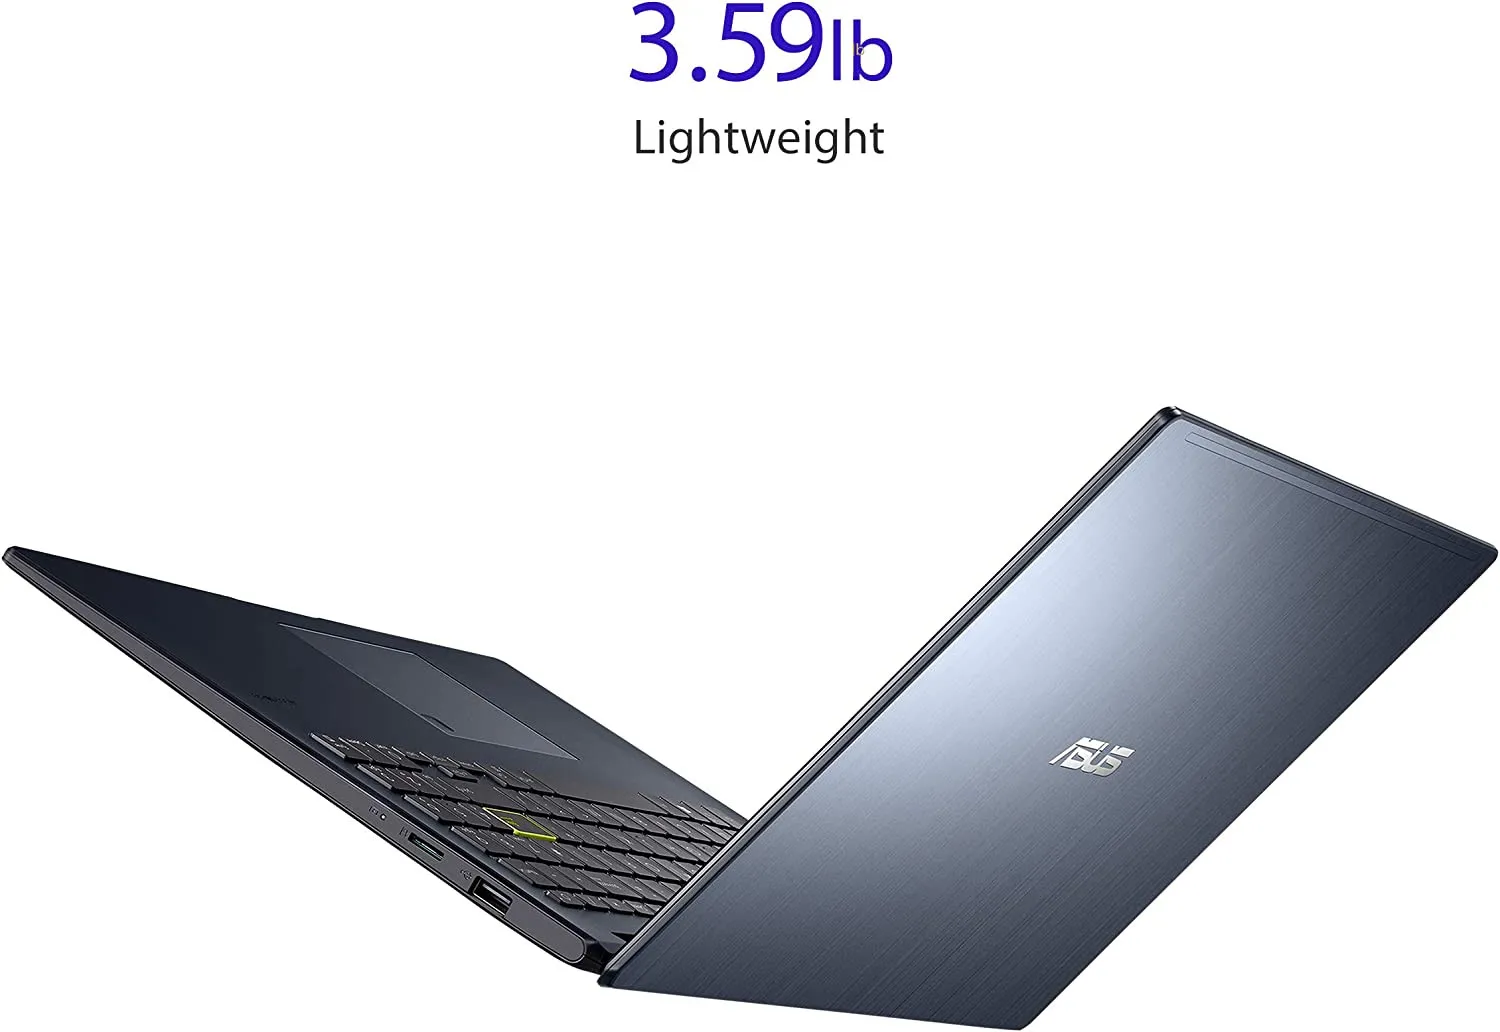 Ноутбук Asus L510M 15.6 1920x1080 Celeron N4020 4Gb/128GB SSD + Мышка с ковриком в подарок!#7